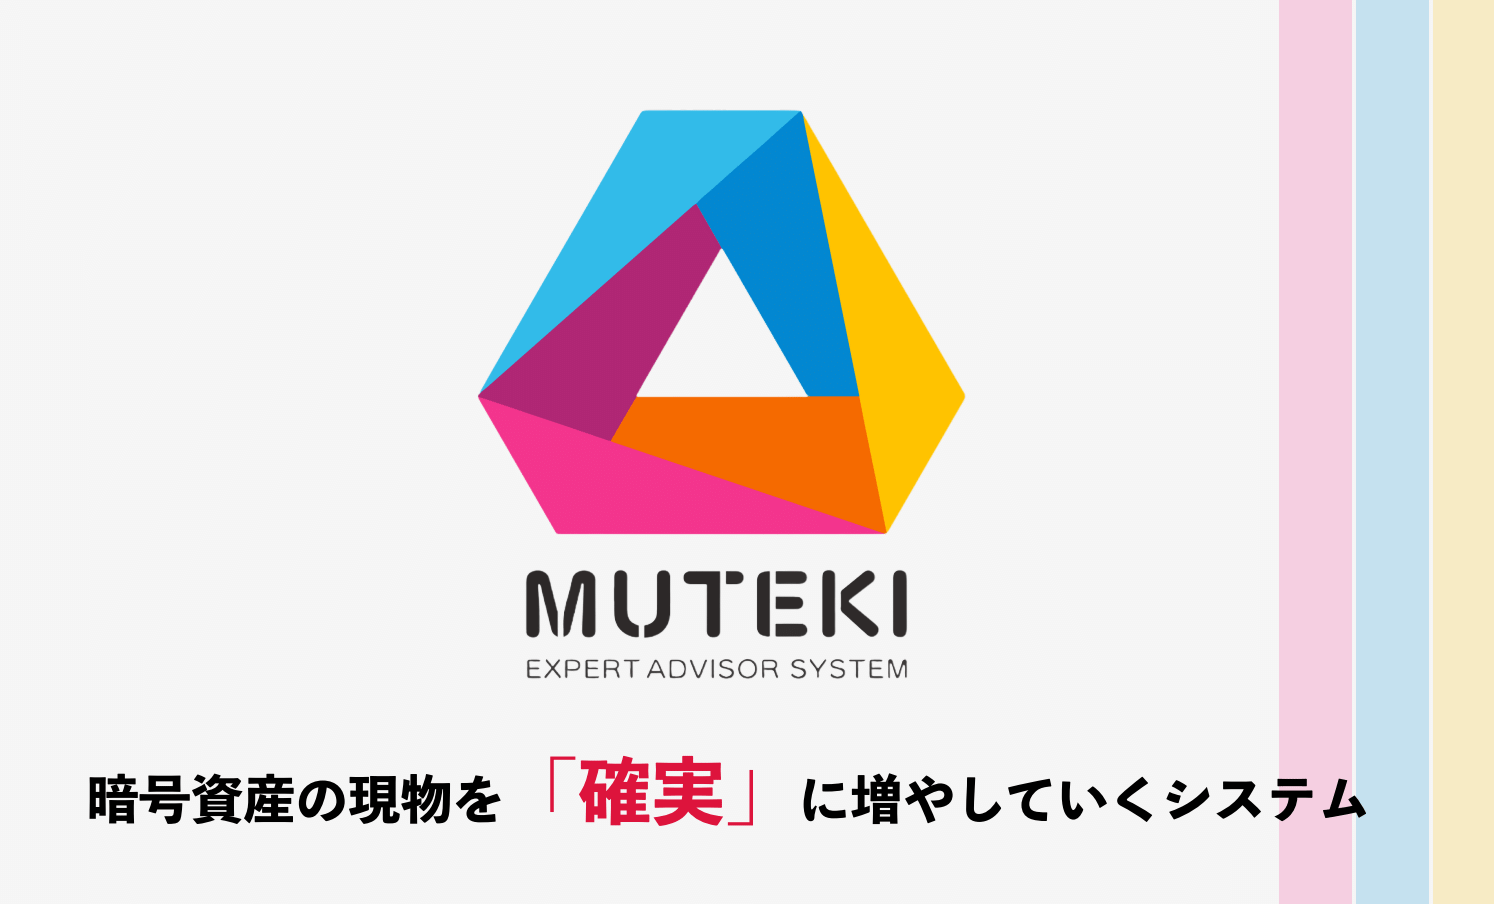 ムテキ(MUTEKI)とはBitget上で提供される次世代仮想通貨取引システム